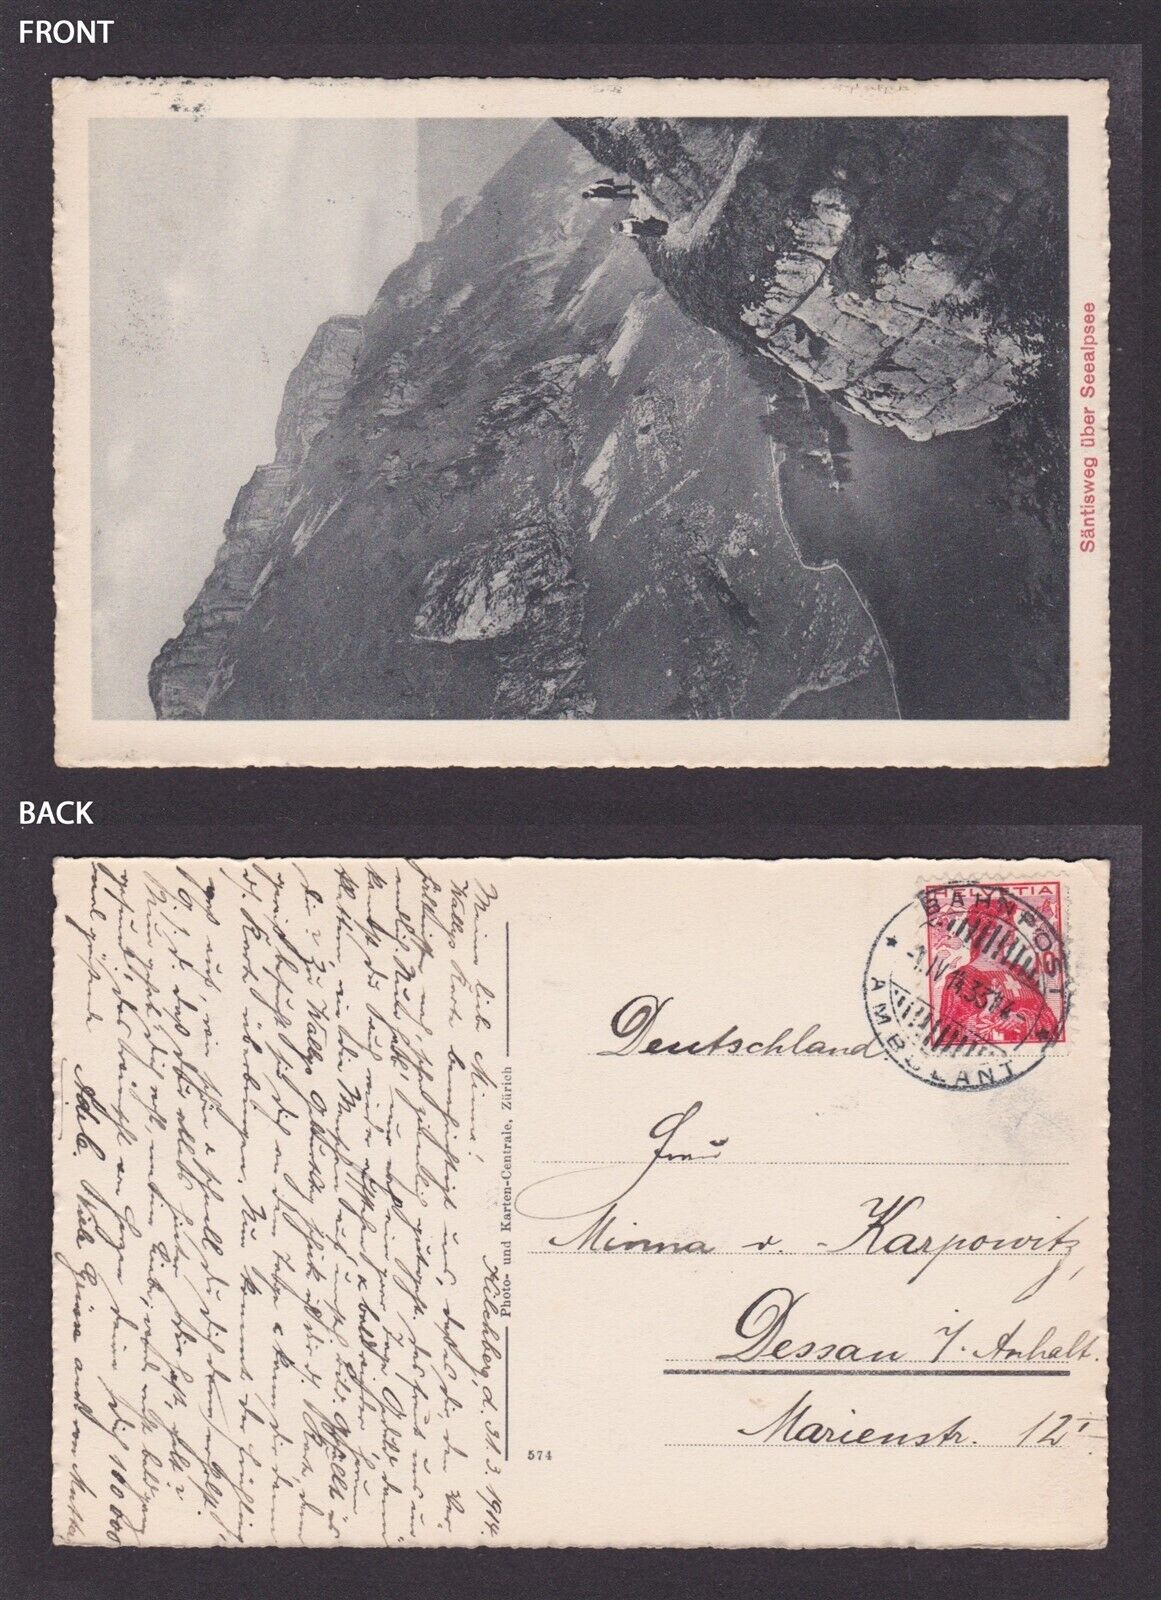 SWITZERLAND 1933, Vintage postcard, Säntisweg via Seealpsee, posted